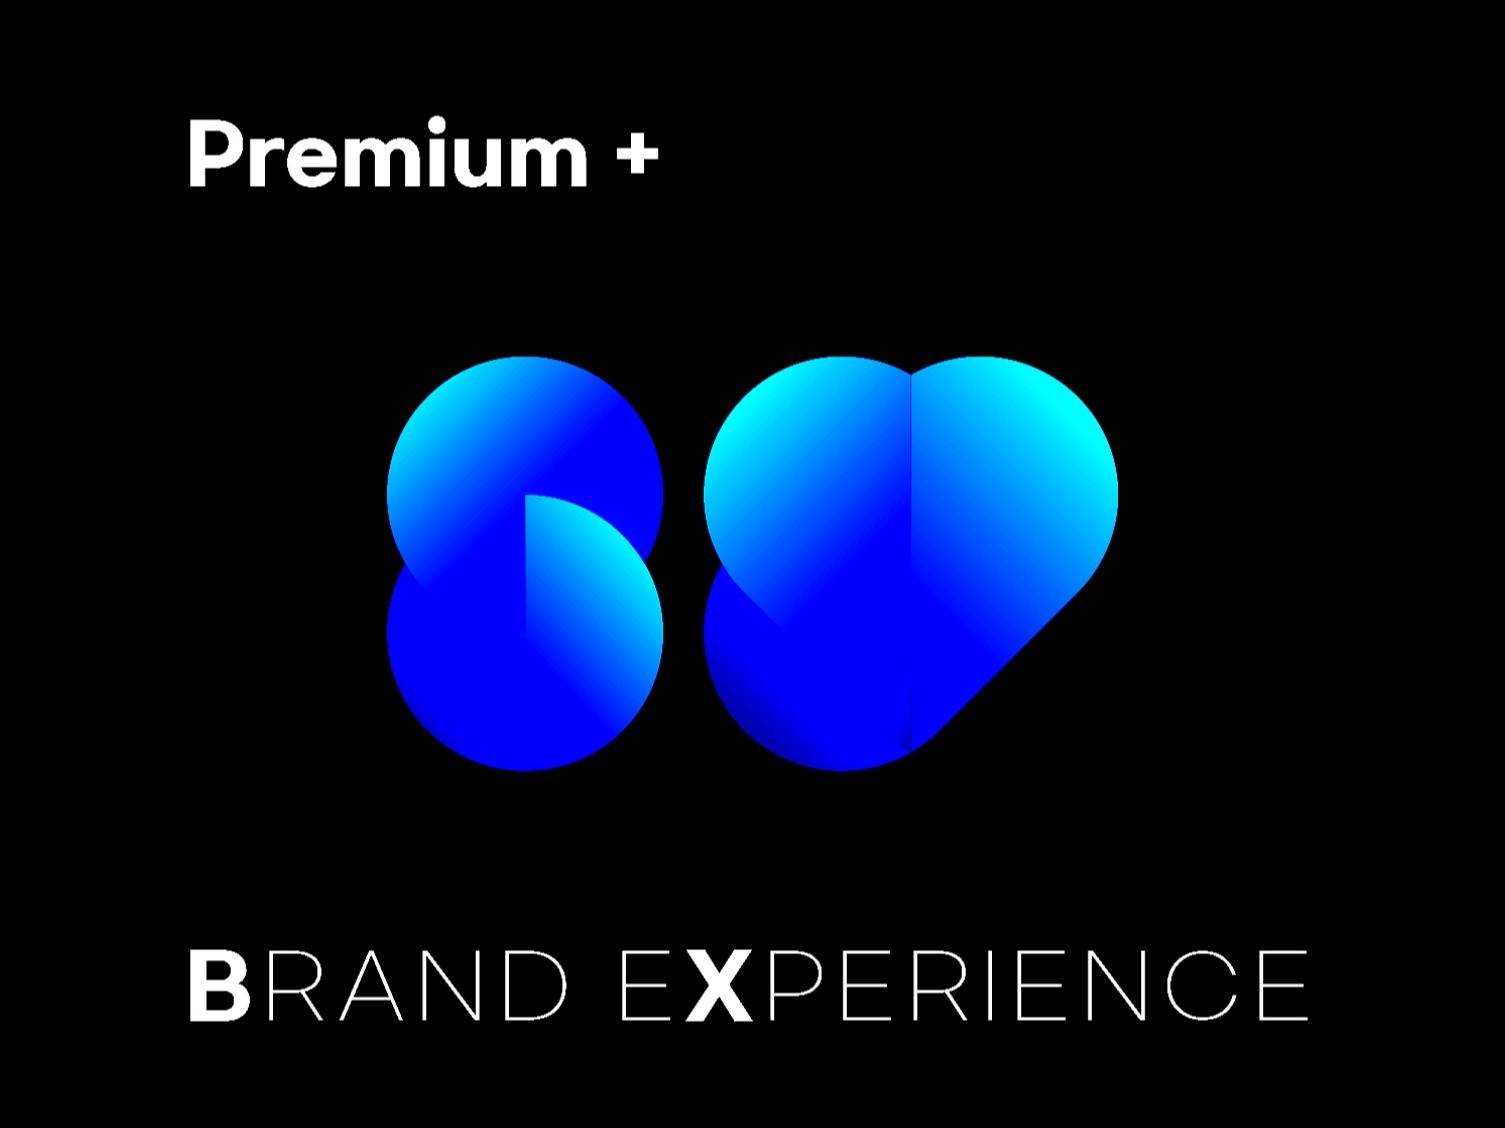 우리는 고객의 브랜드에 대한 경험으로 로고를 완성해 드립니다.